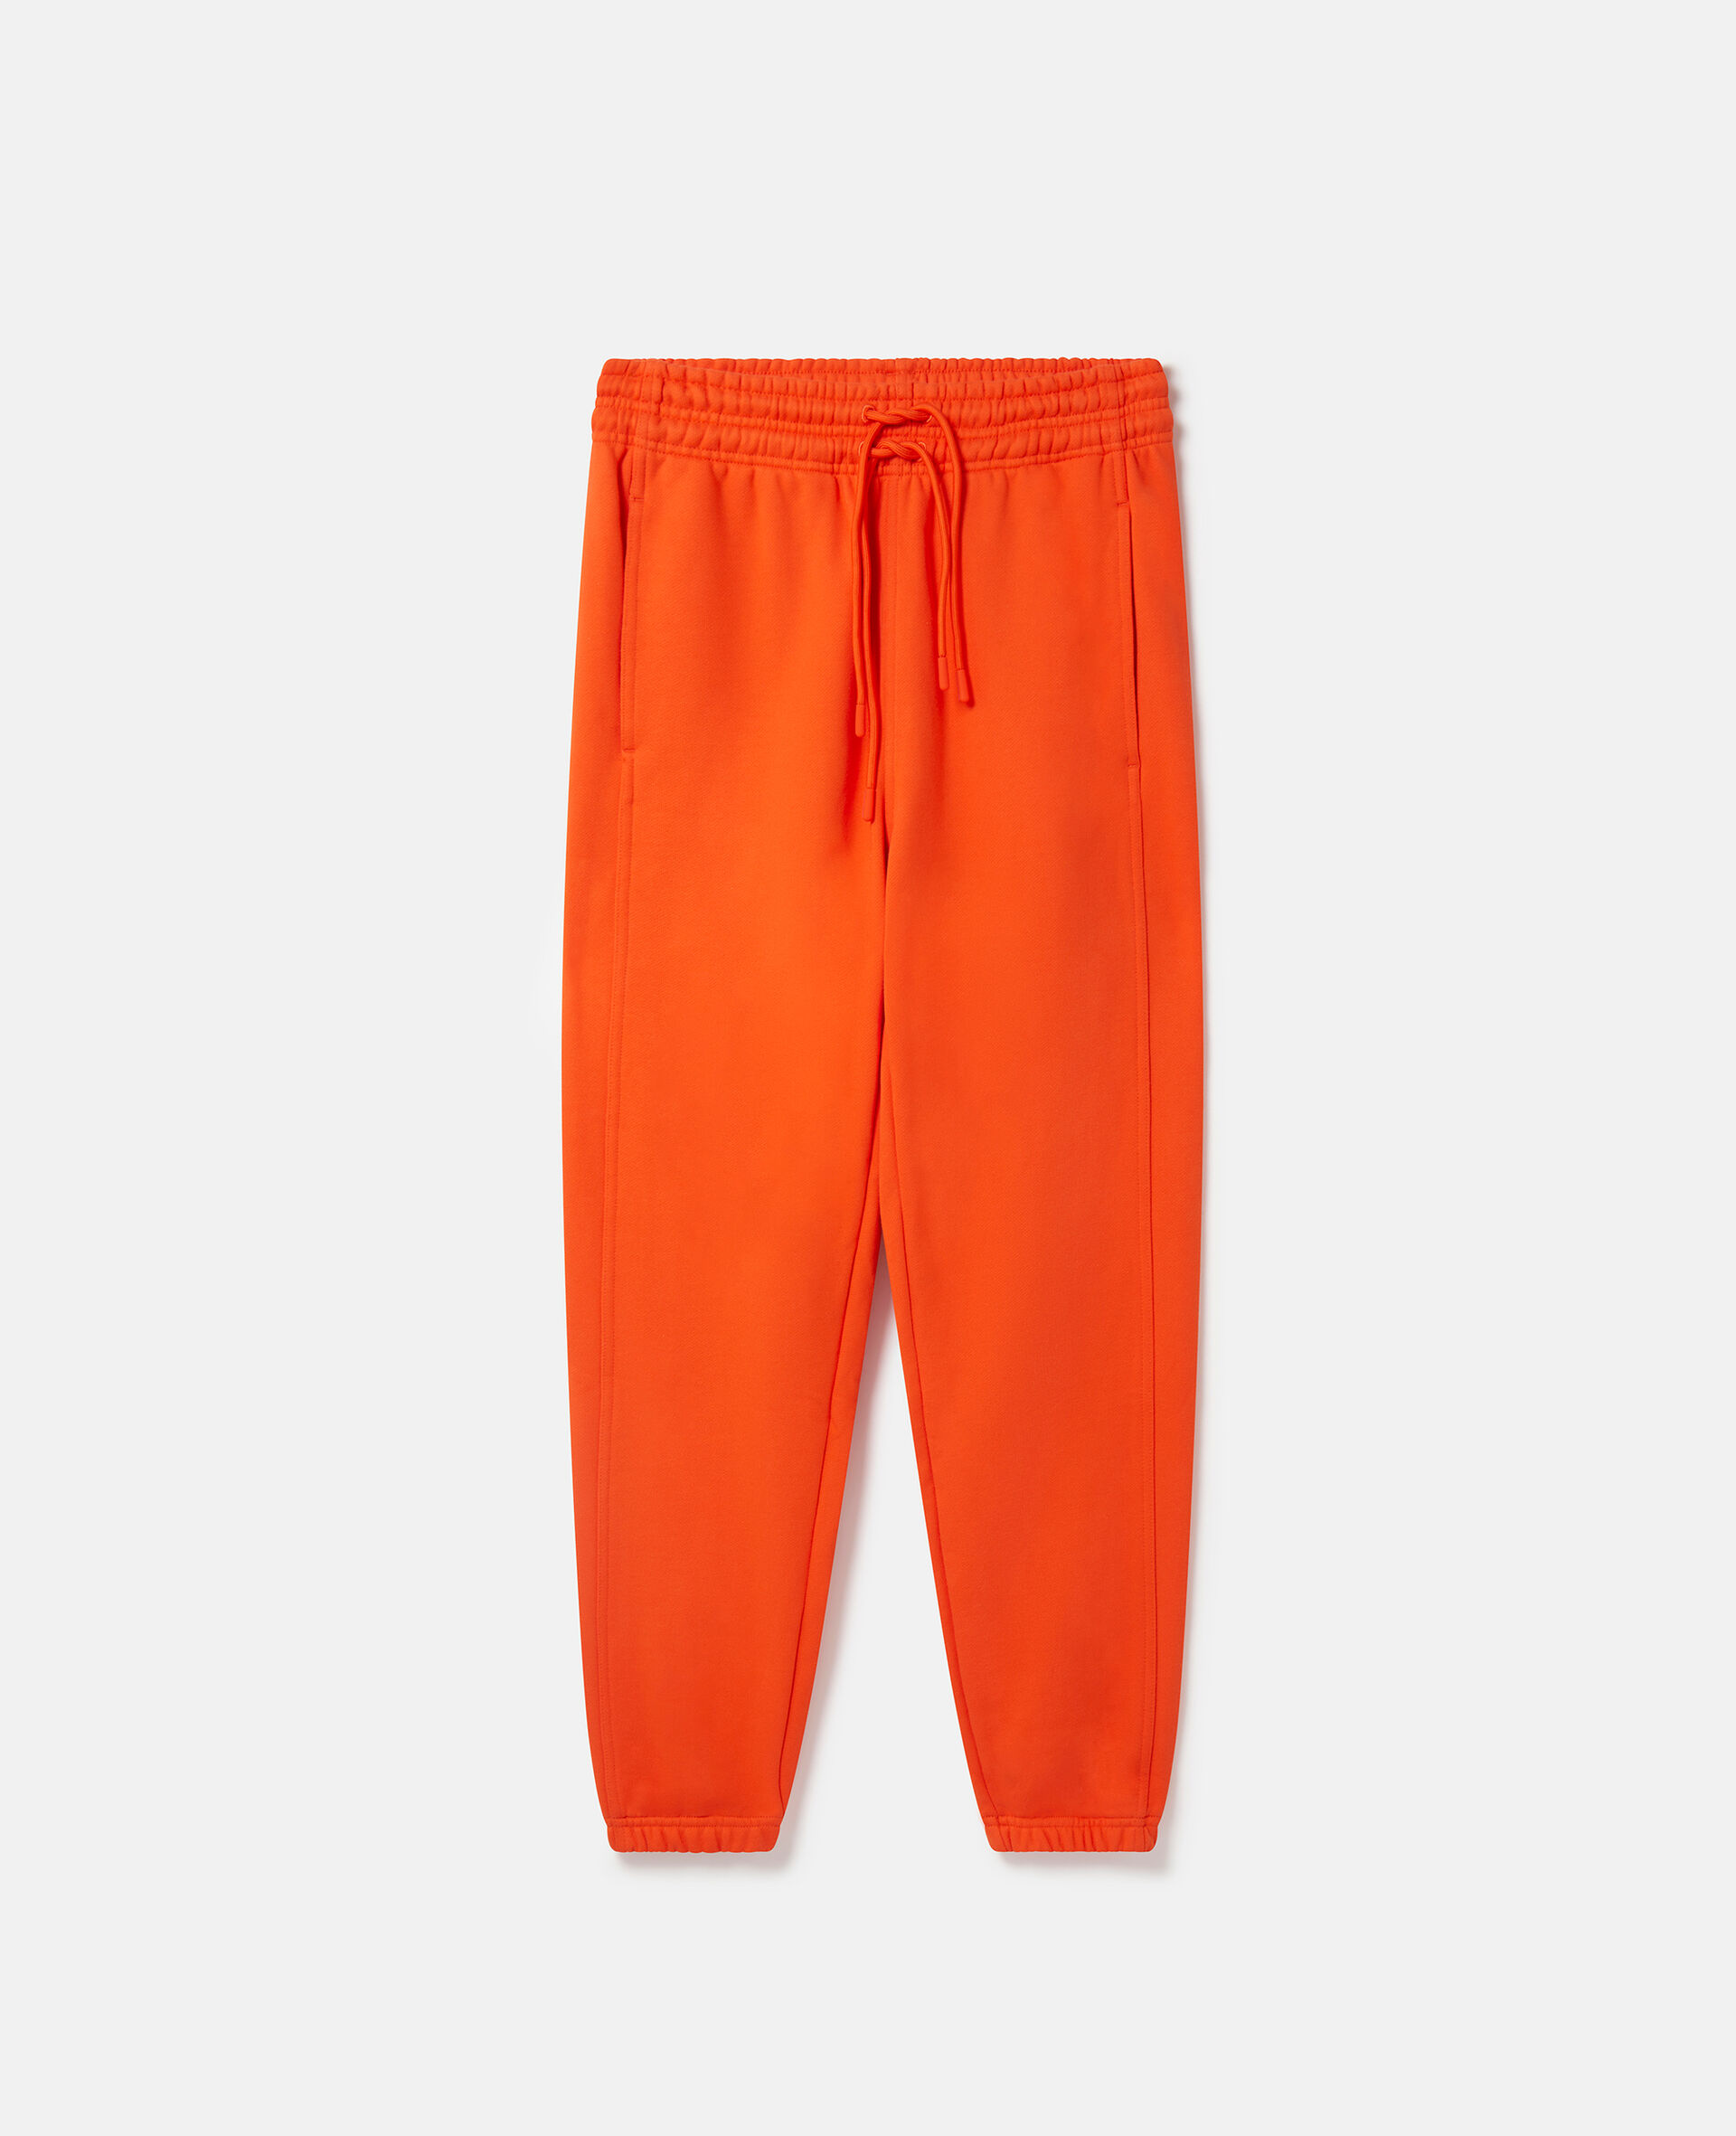 Pantalon de survêtement TrueCasuals-Orange-large image number 0